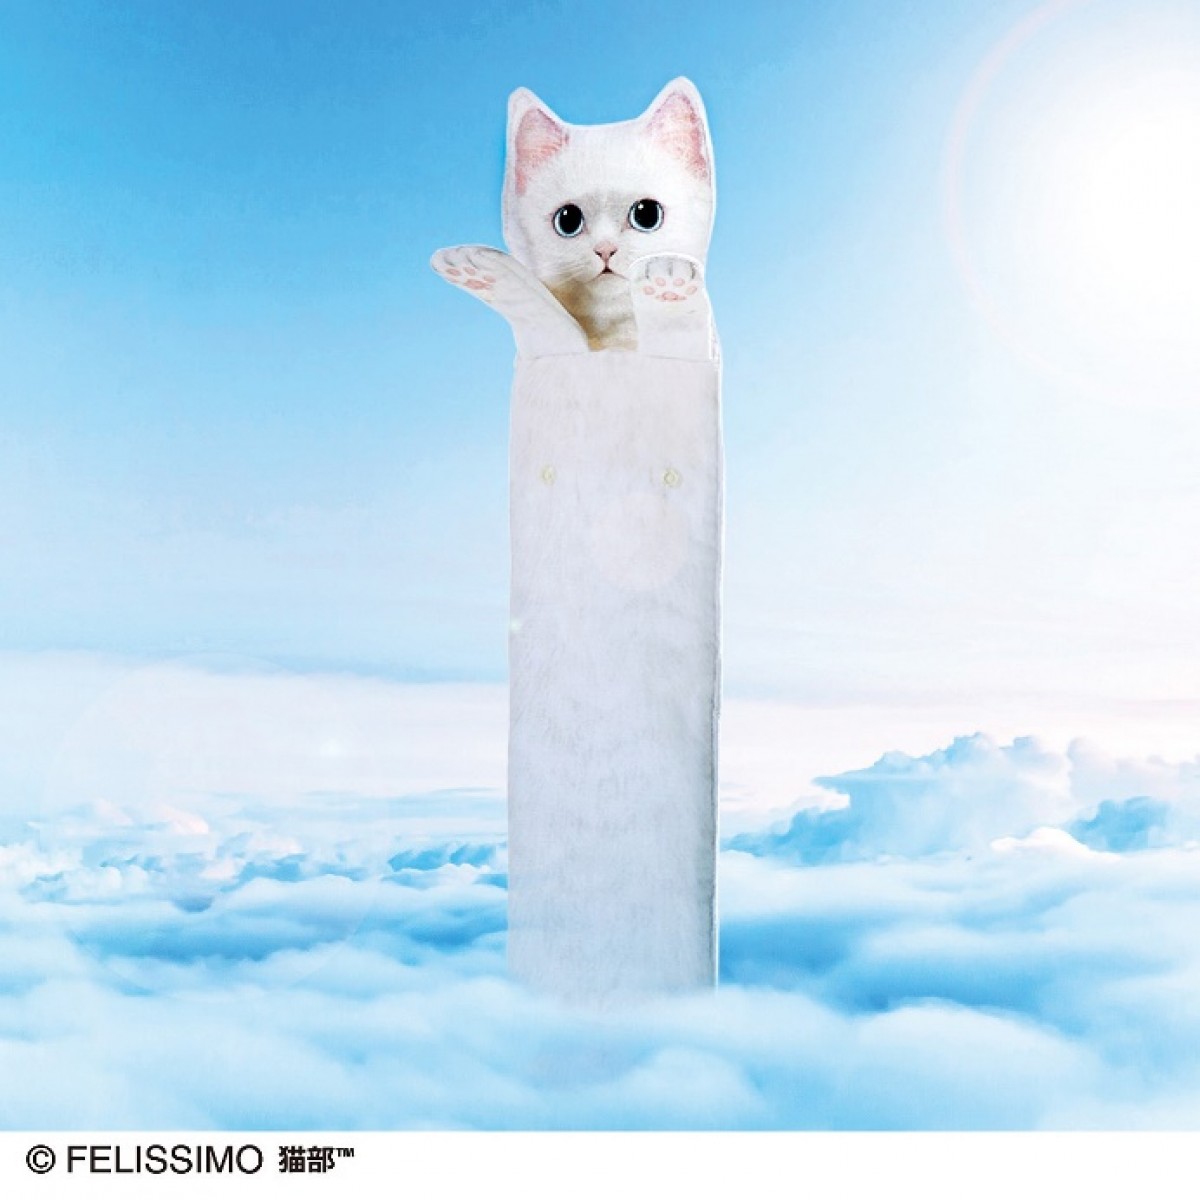 胴が長すぎる猫「のびーるたん」公認の白猫タオルが登場